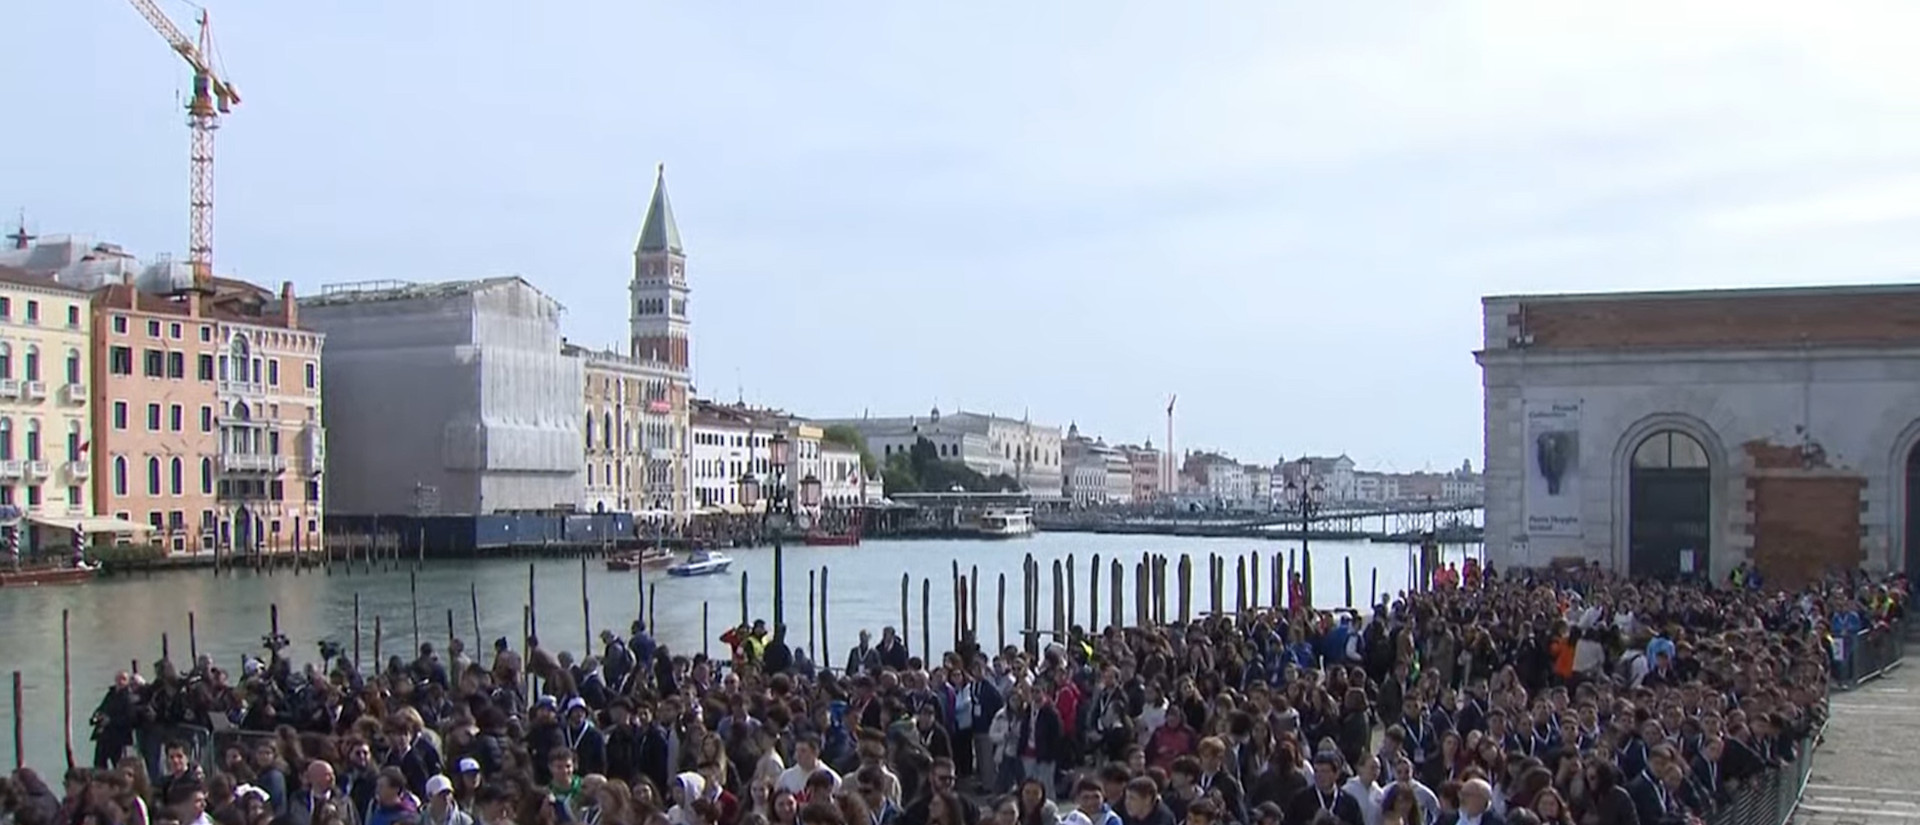 Besuch von Papst Franziskus in Venedig:Zehntausend Menschen wollten in sehen.